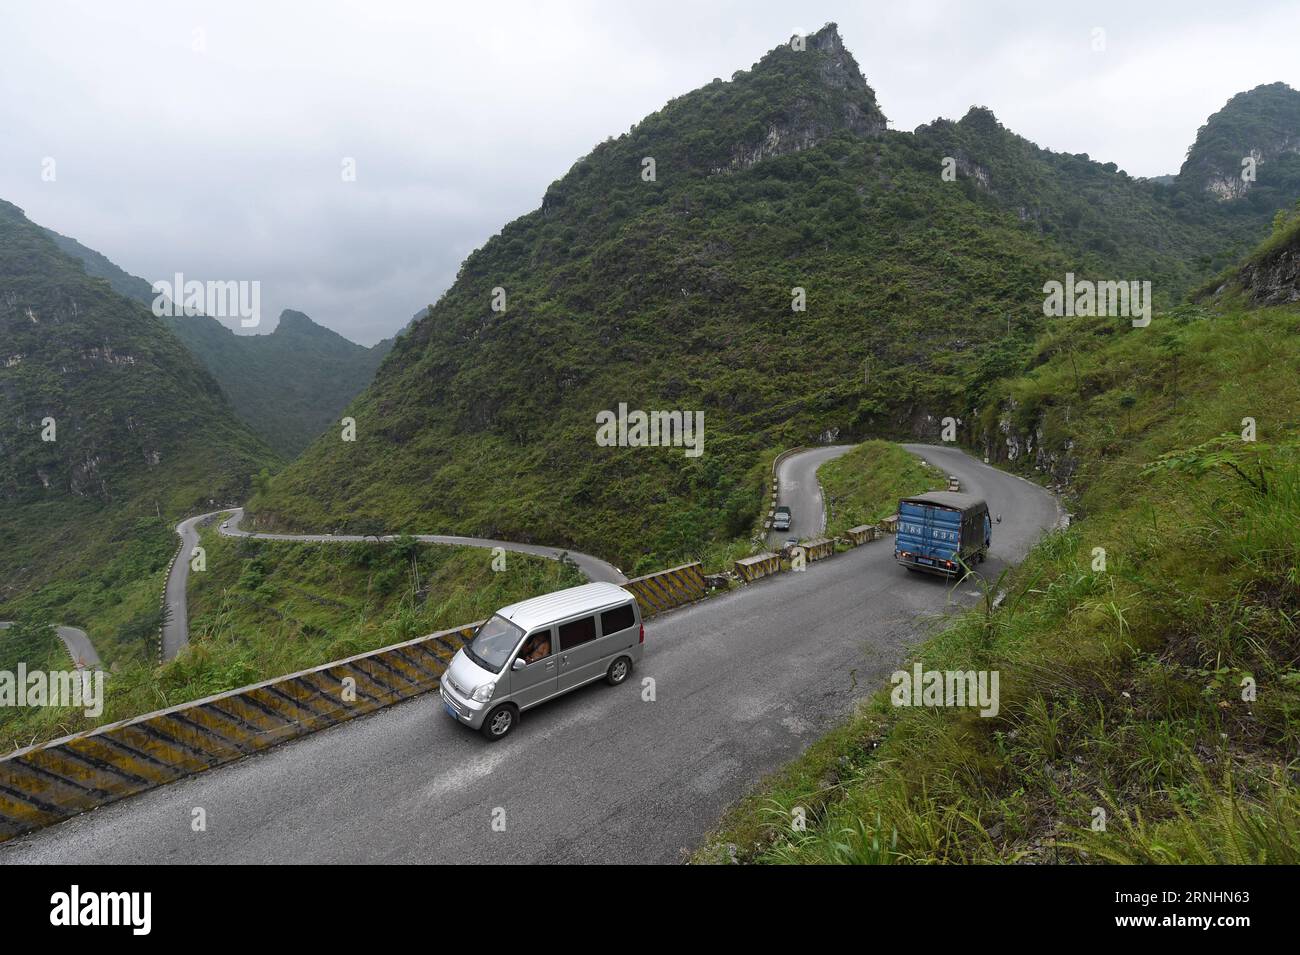 (161130) -- NANNING, 30. November 2016 -- Fahrzeuge fahren auf einer Bergstraße im Dorf Wanmao im Autonomen Kreis du an Yao, südchinesische Autonome Region Guangxi Zhuang, 2. Juli 2015. Der Bau von Straßen ist zu einer Priorität bei den Bemühungen zur Armutsbekämpfung in den bergigen Bezirken geworden. Nun wurden über 1.700 km lange Autobahnen gebaut, um diese von Armut betroffenen Dörfer in abgelegenen Bergen zu verbinden. ) (Ry) CHINA-GUANGXI-POVERTY LINDERUNG-ROAD BUILDING (CN) LuxBo an PUBLICATIONxNOTxINxCHN Nanning Nov 30 2016 FAHRZEUGE fahren AUF einer Bergstraße in Ihrem Dorf nach Yao Autonomous County Südchina S Guangxi ZH Stockfoto